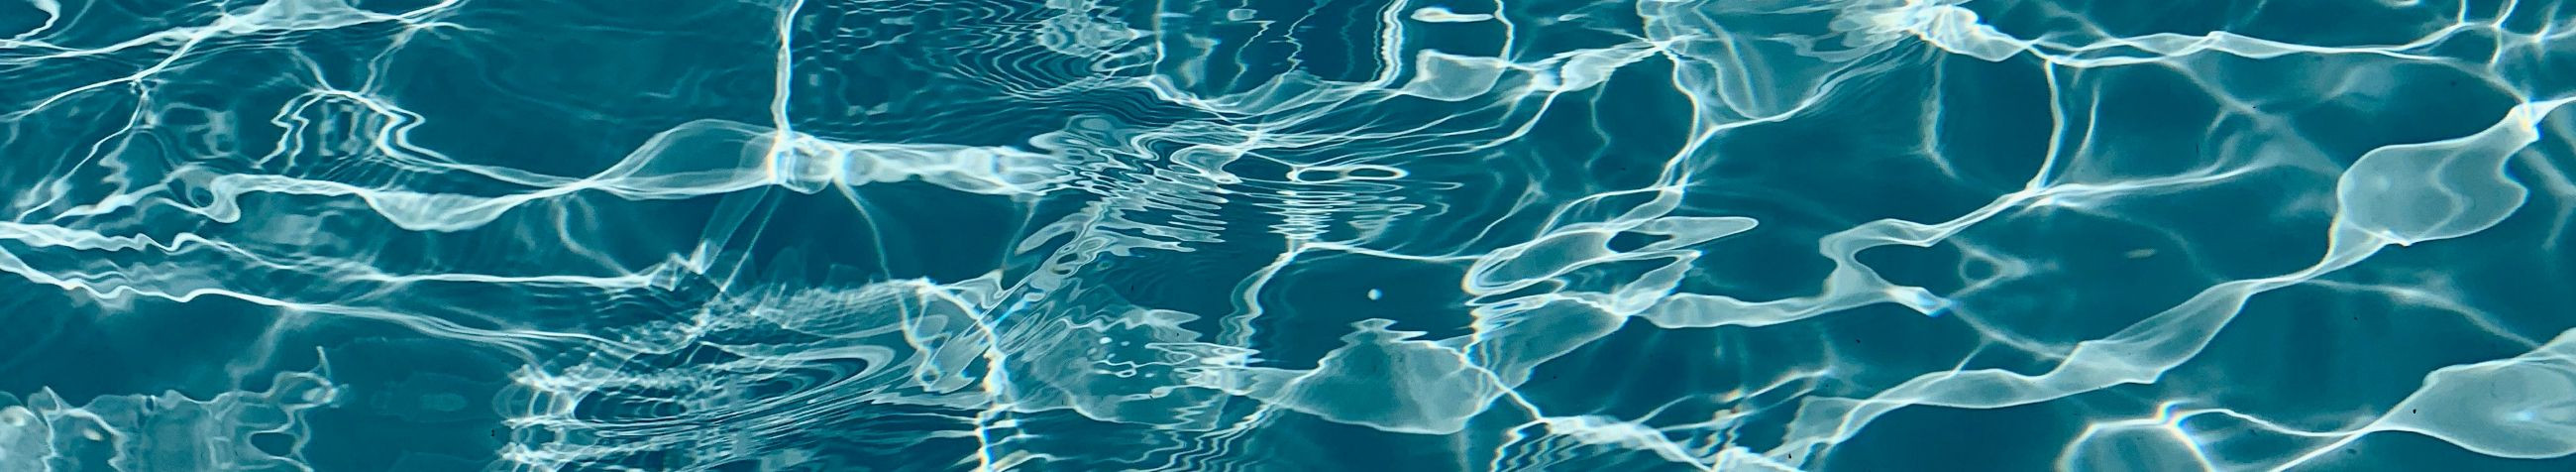 KARDIISIA OÜ tegeleb Basseinipood.ee-s basseinide ja basseinitarvikute müügi ning terviklahenduste pakkumisega koduaias veemõnude loomiseks.